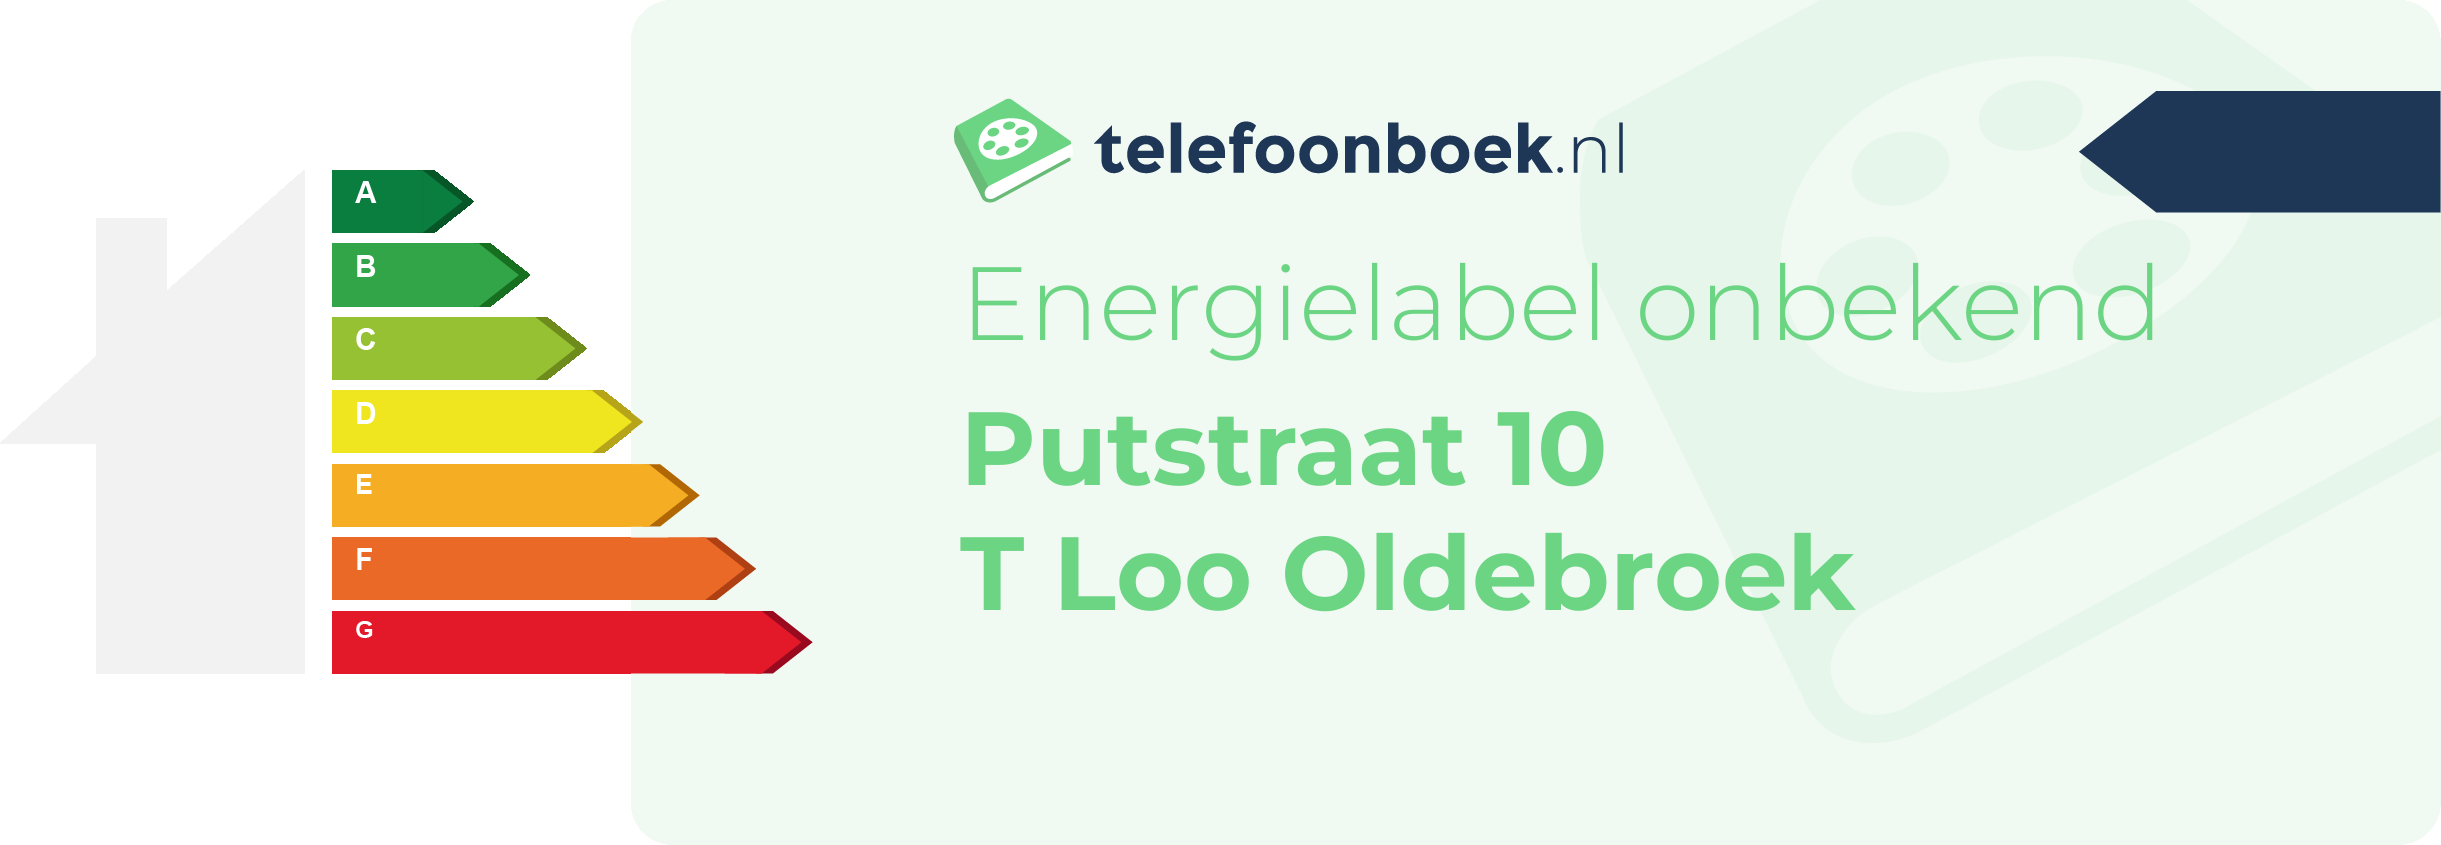 Energielabel Putstraat 10 T Loo Oldebroek